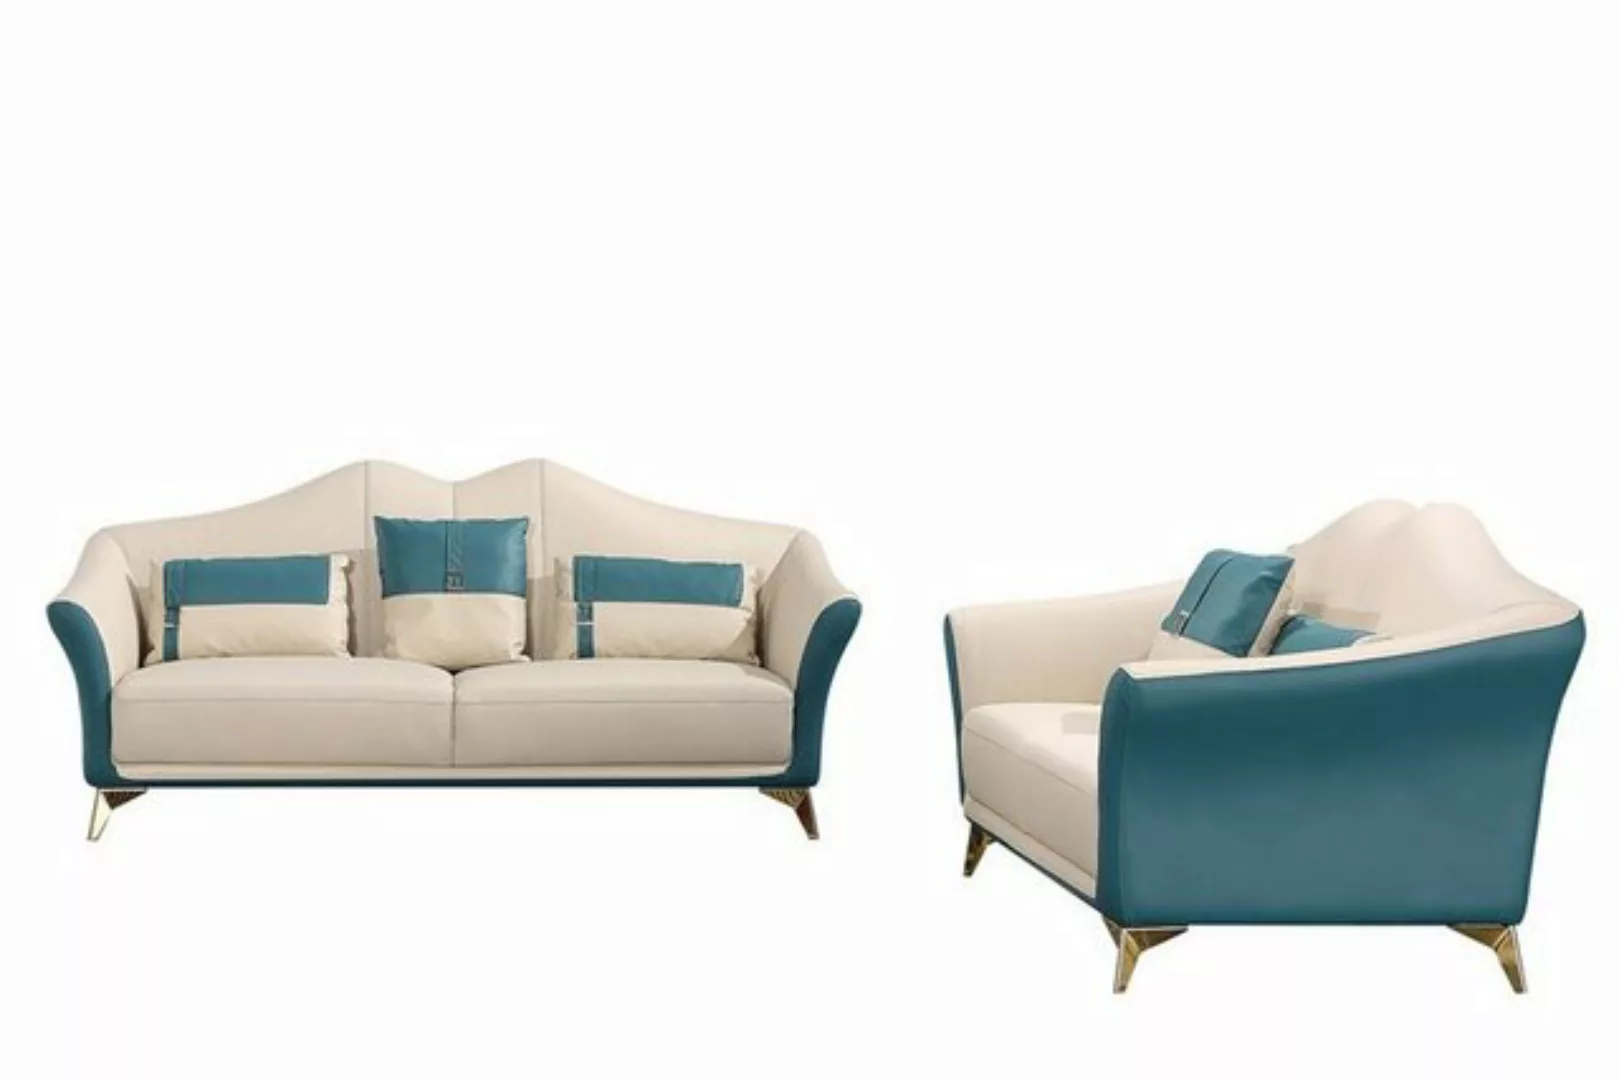 JVmoebel Sofa Orange-weiße Sofagarnitur 3+2 Sitzer modernes Design Neu Pols günstig online kaufen